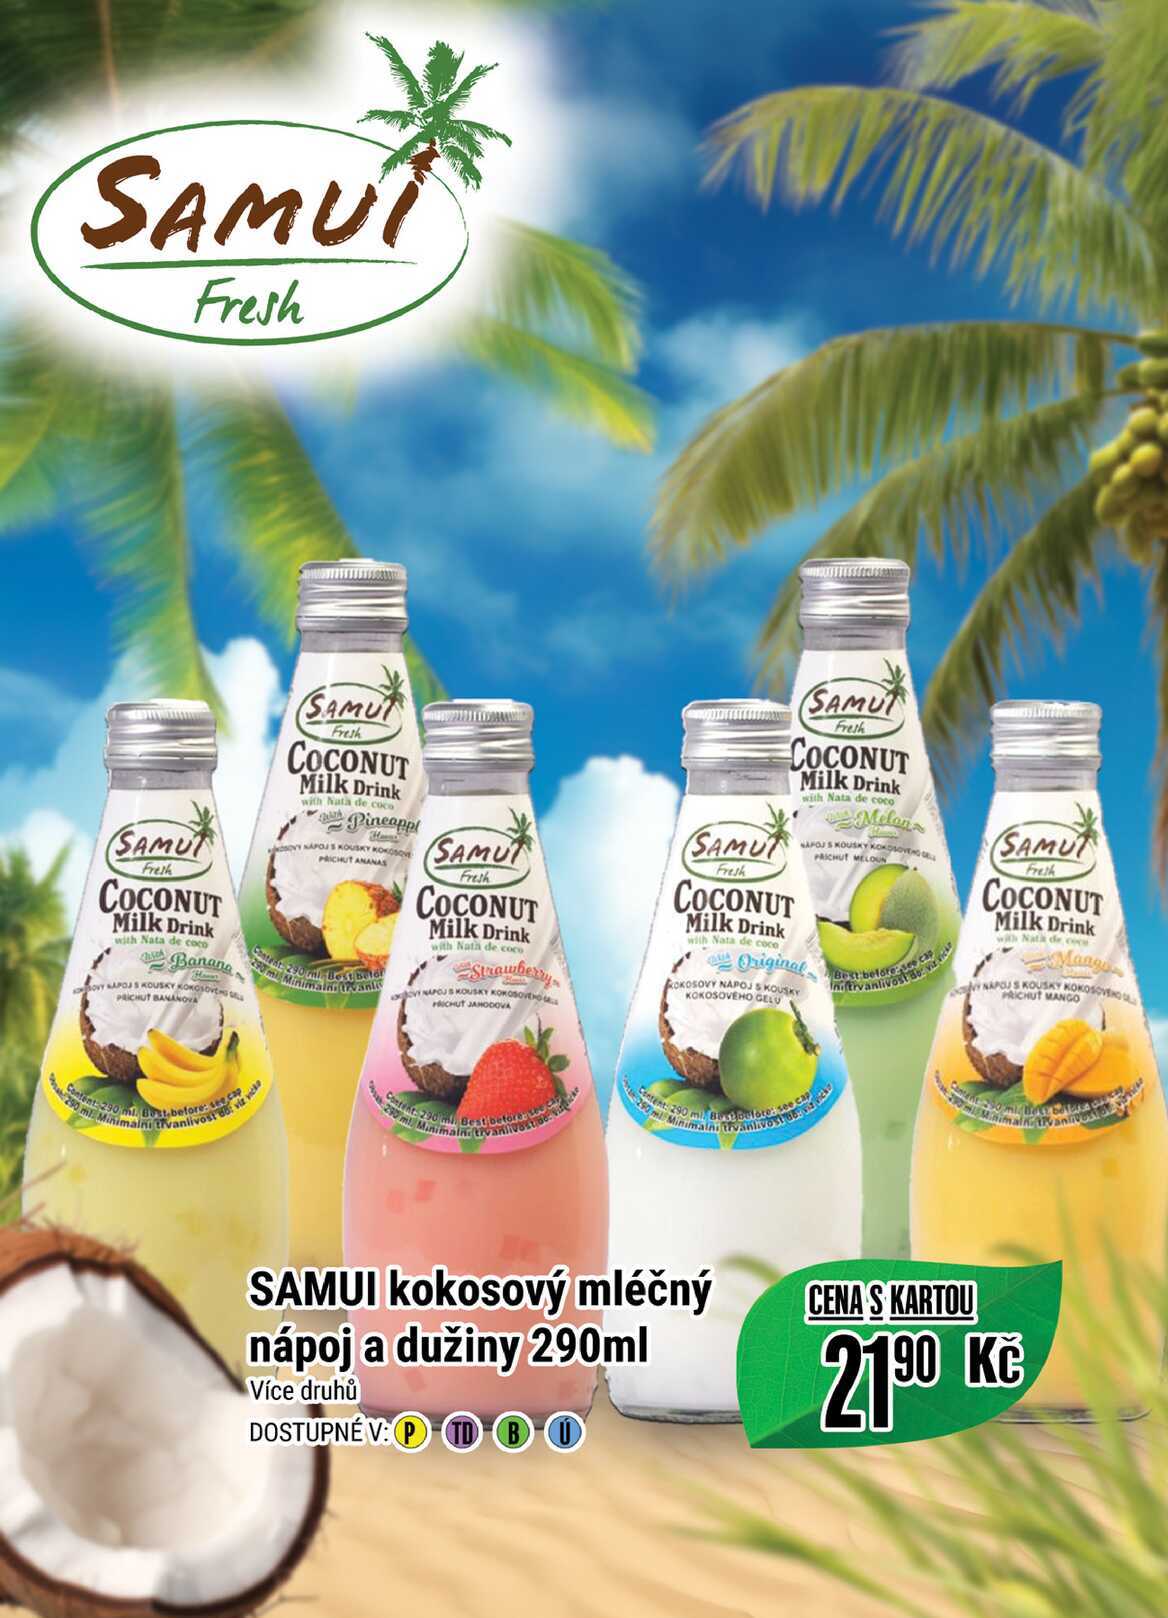 SAMUI kokosový mléčný nápoj a dužiny 290ml  